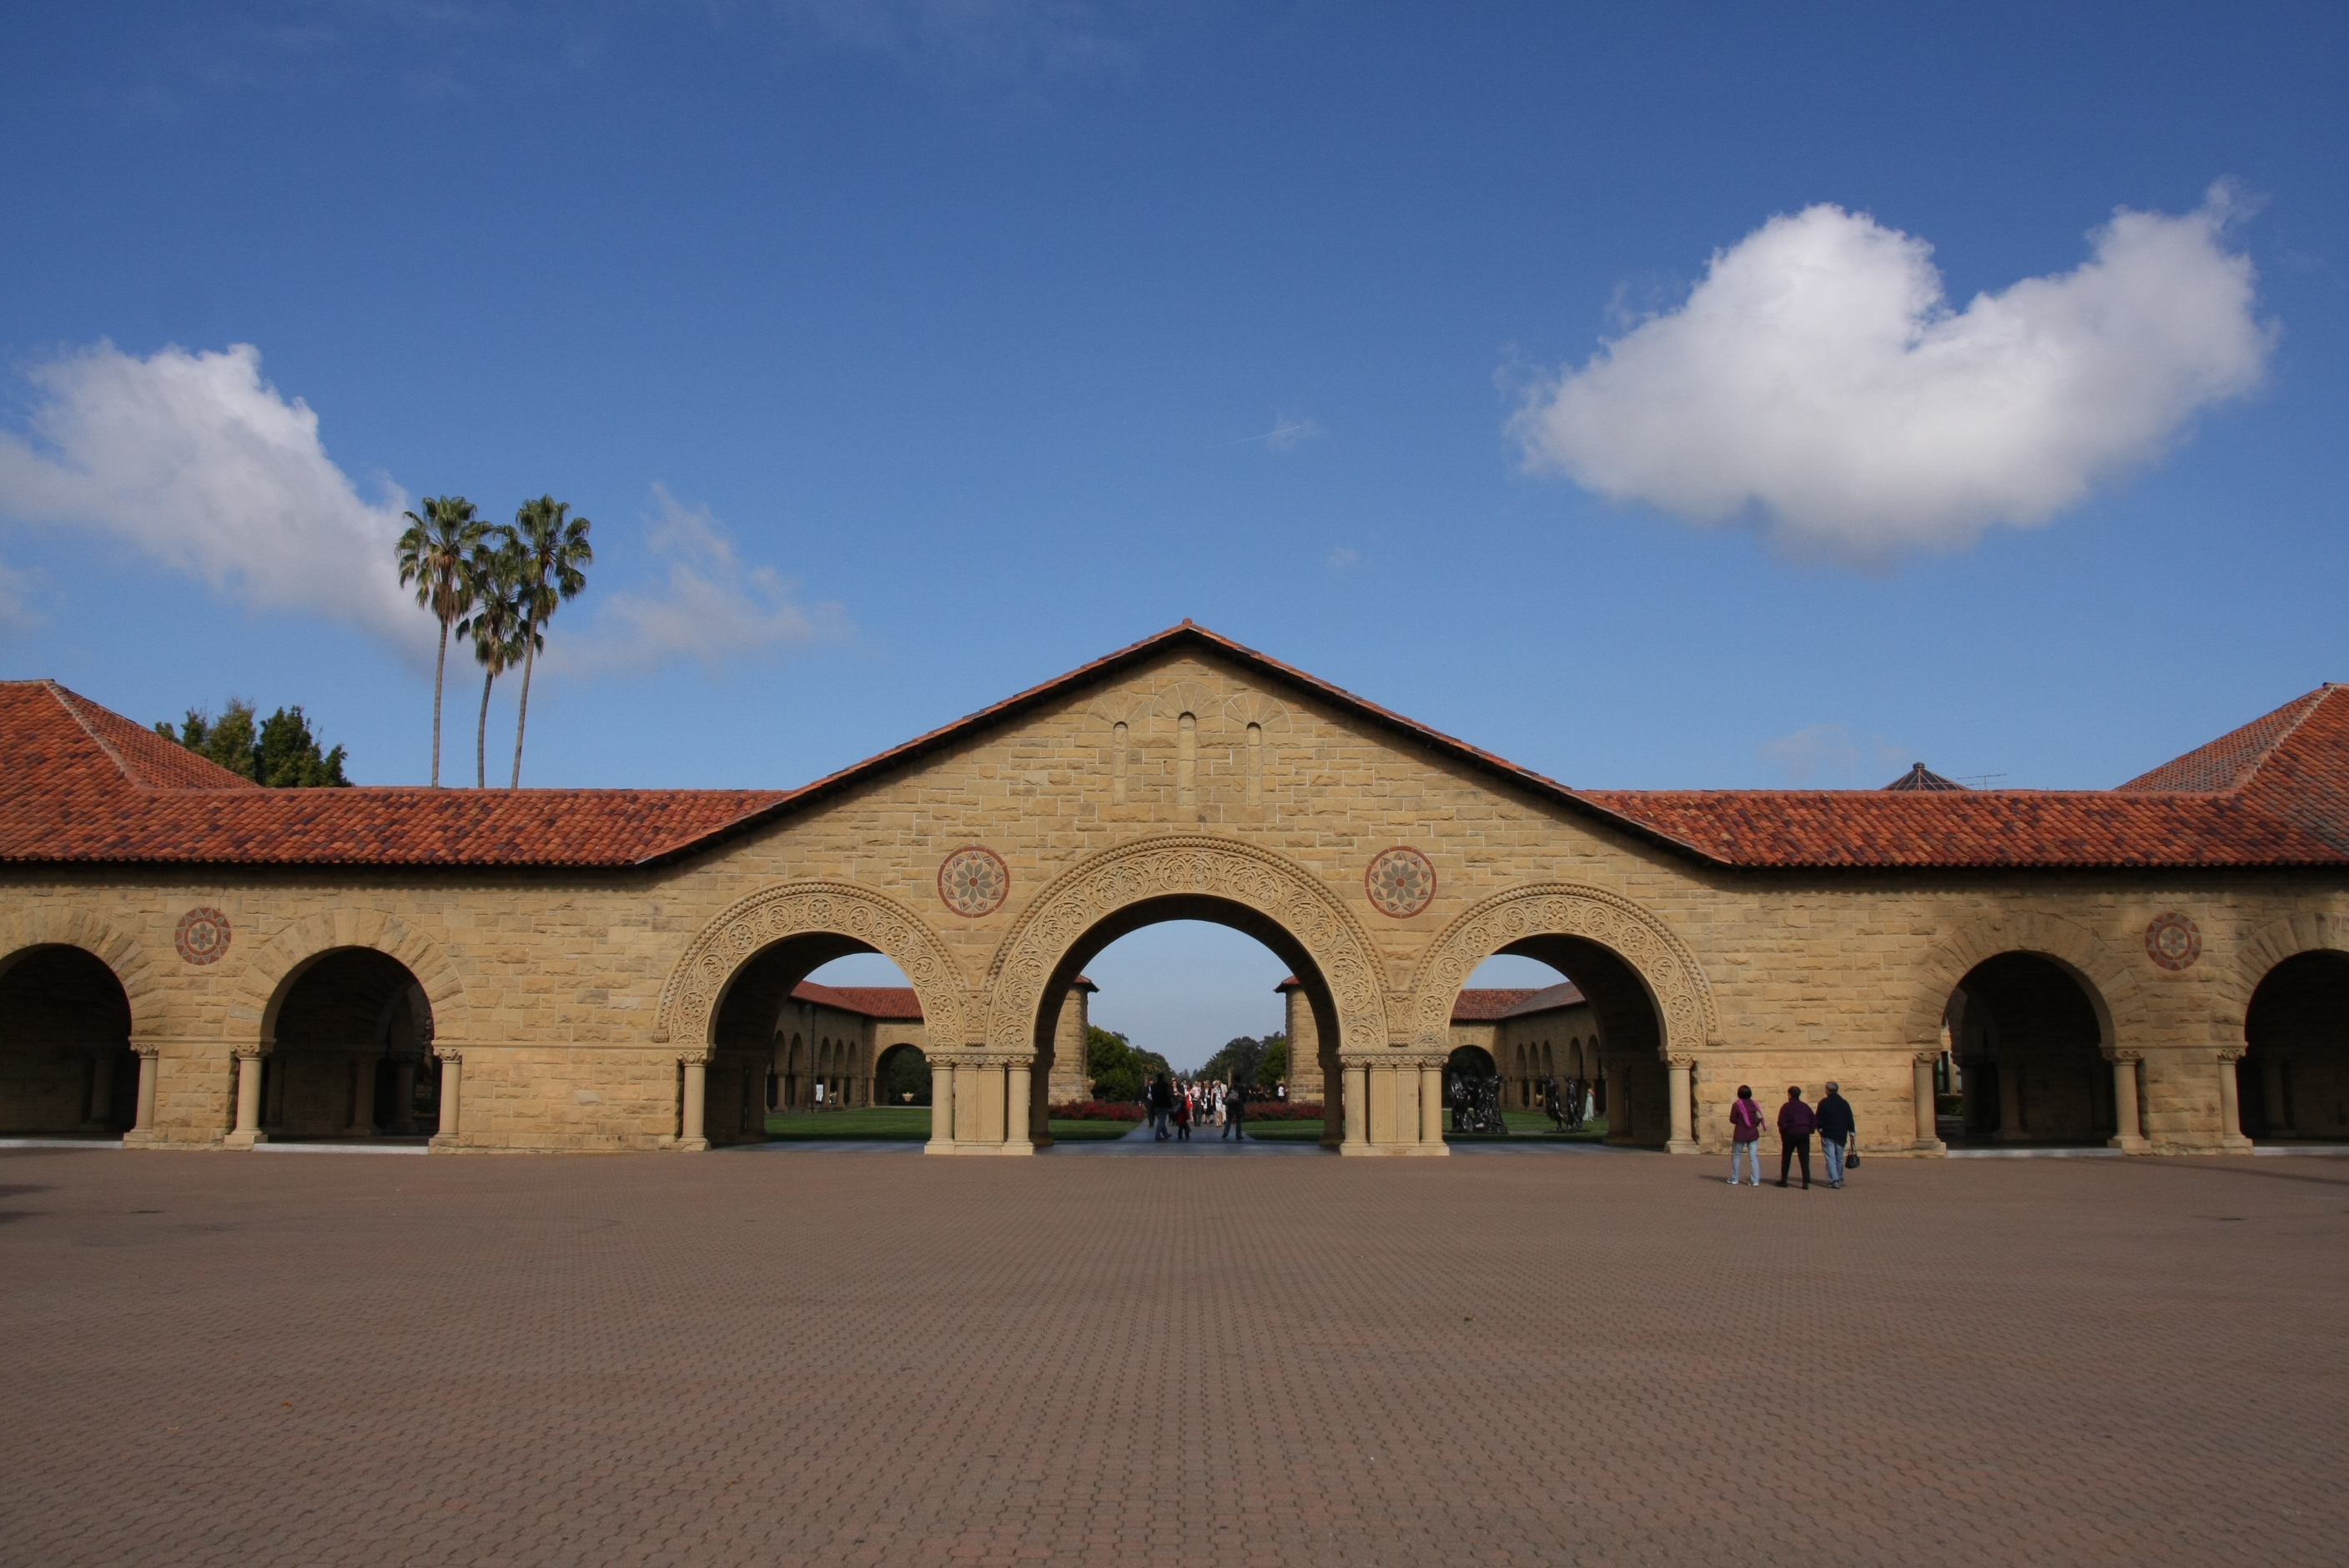 Stanford University in Palo Alto, Calif.
